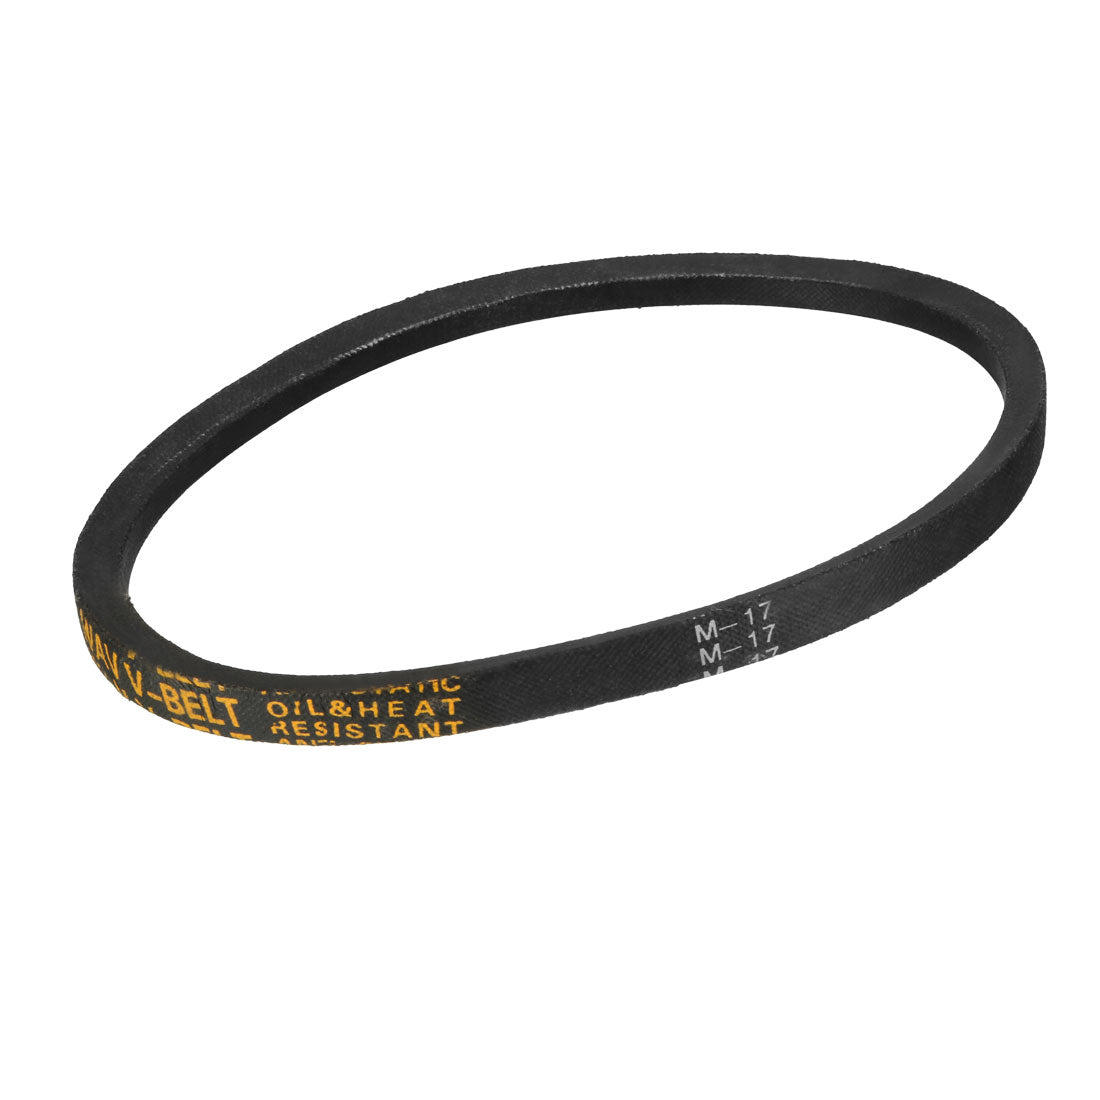 uxcell Uxcell V-Belt Industrial Power Rubber Transmission Belt